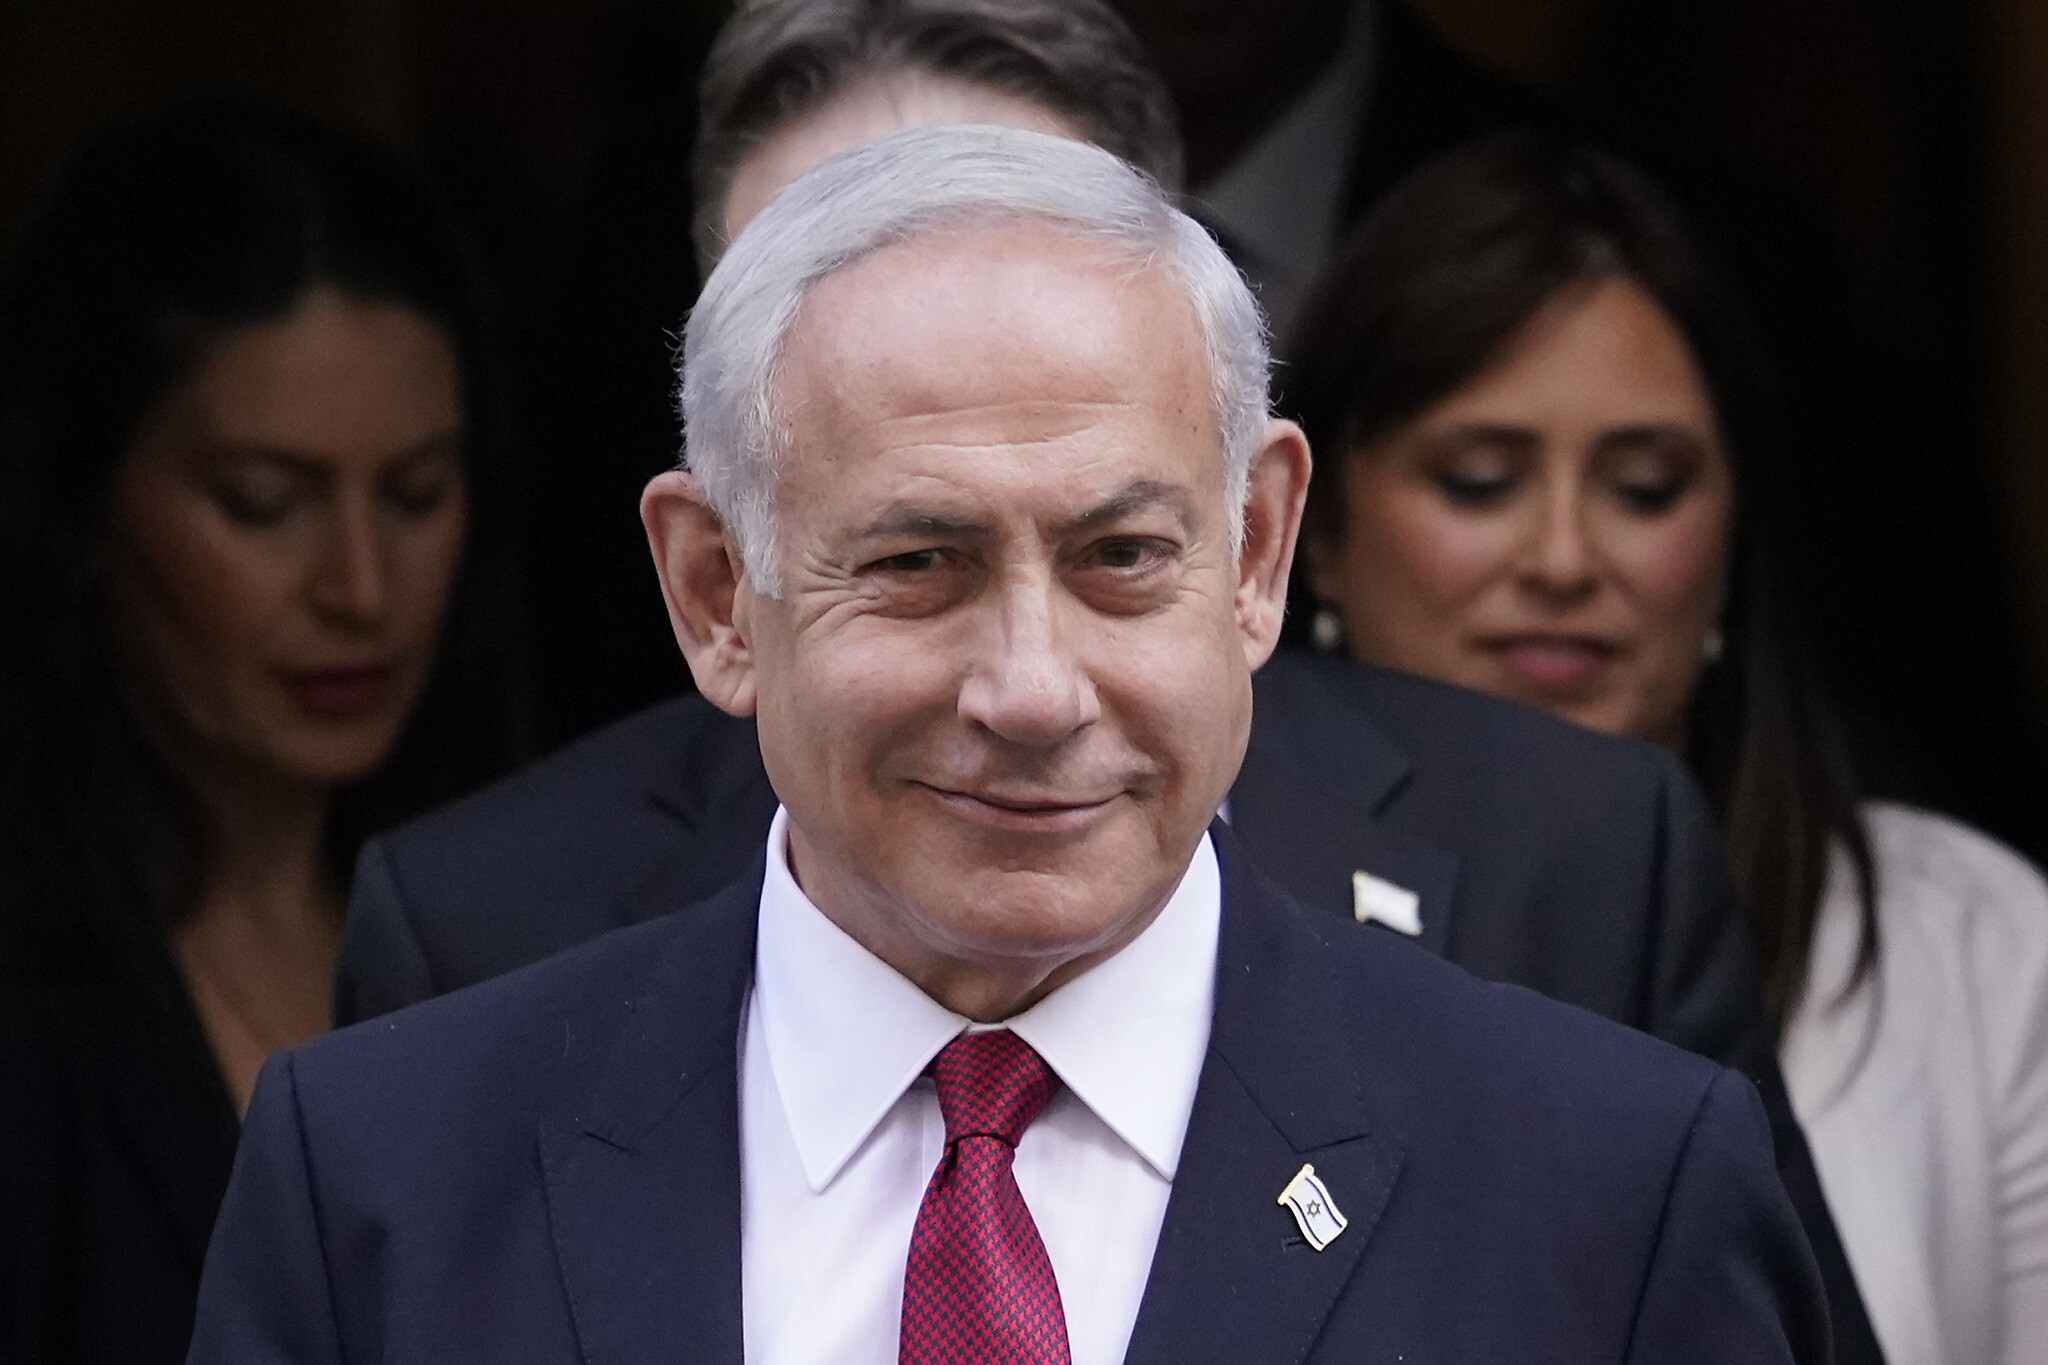 Le Premier ministre Benjamin Netanyahu quittant le 10 Downing Street après une réunion avec le Premier ministre britannique Rishi Sunak, à Londres, le 24 mars 2023. (Crédit : AP Photo/Alberto Pezzali)